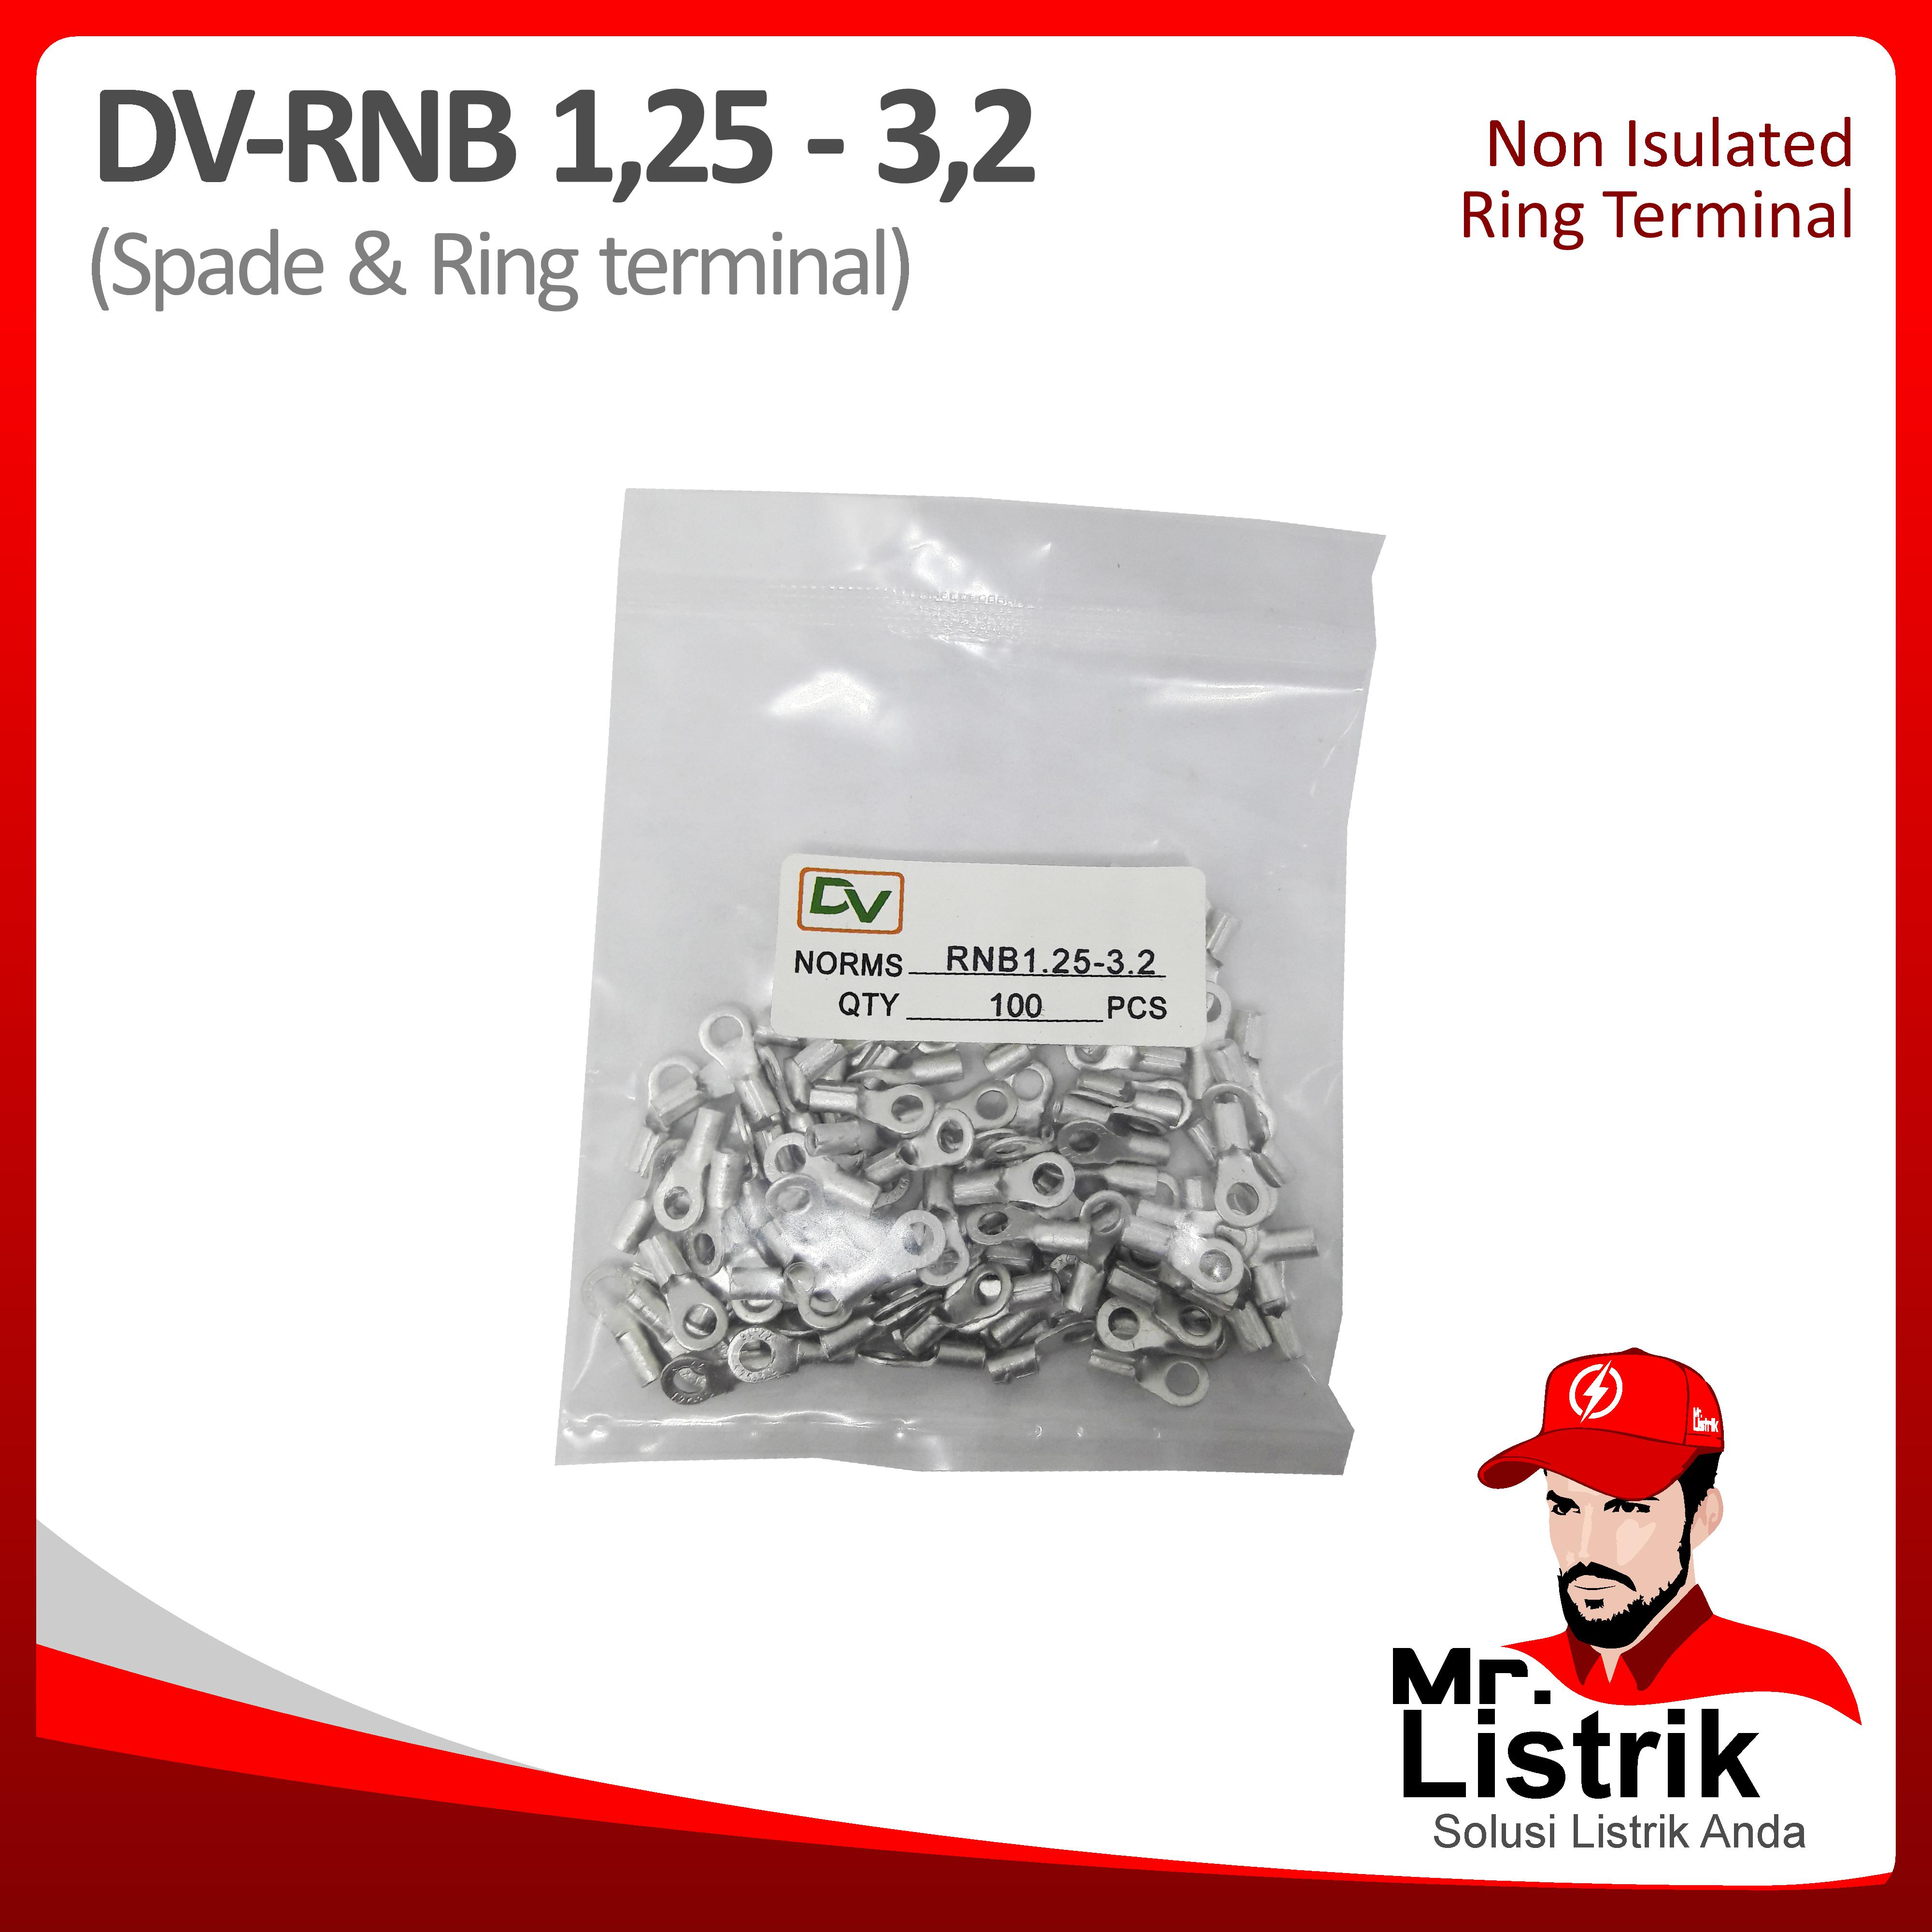 Non Insulated Skun Ring 0.5-1.5mm DV RNB1.25-3.2